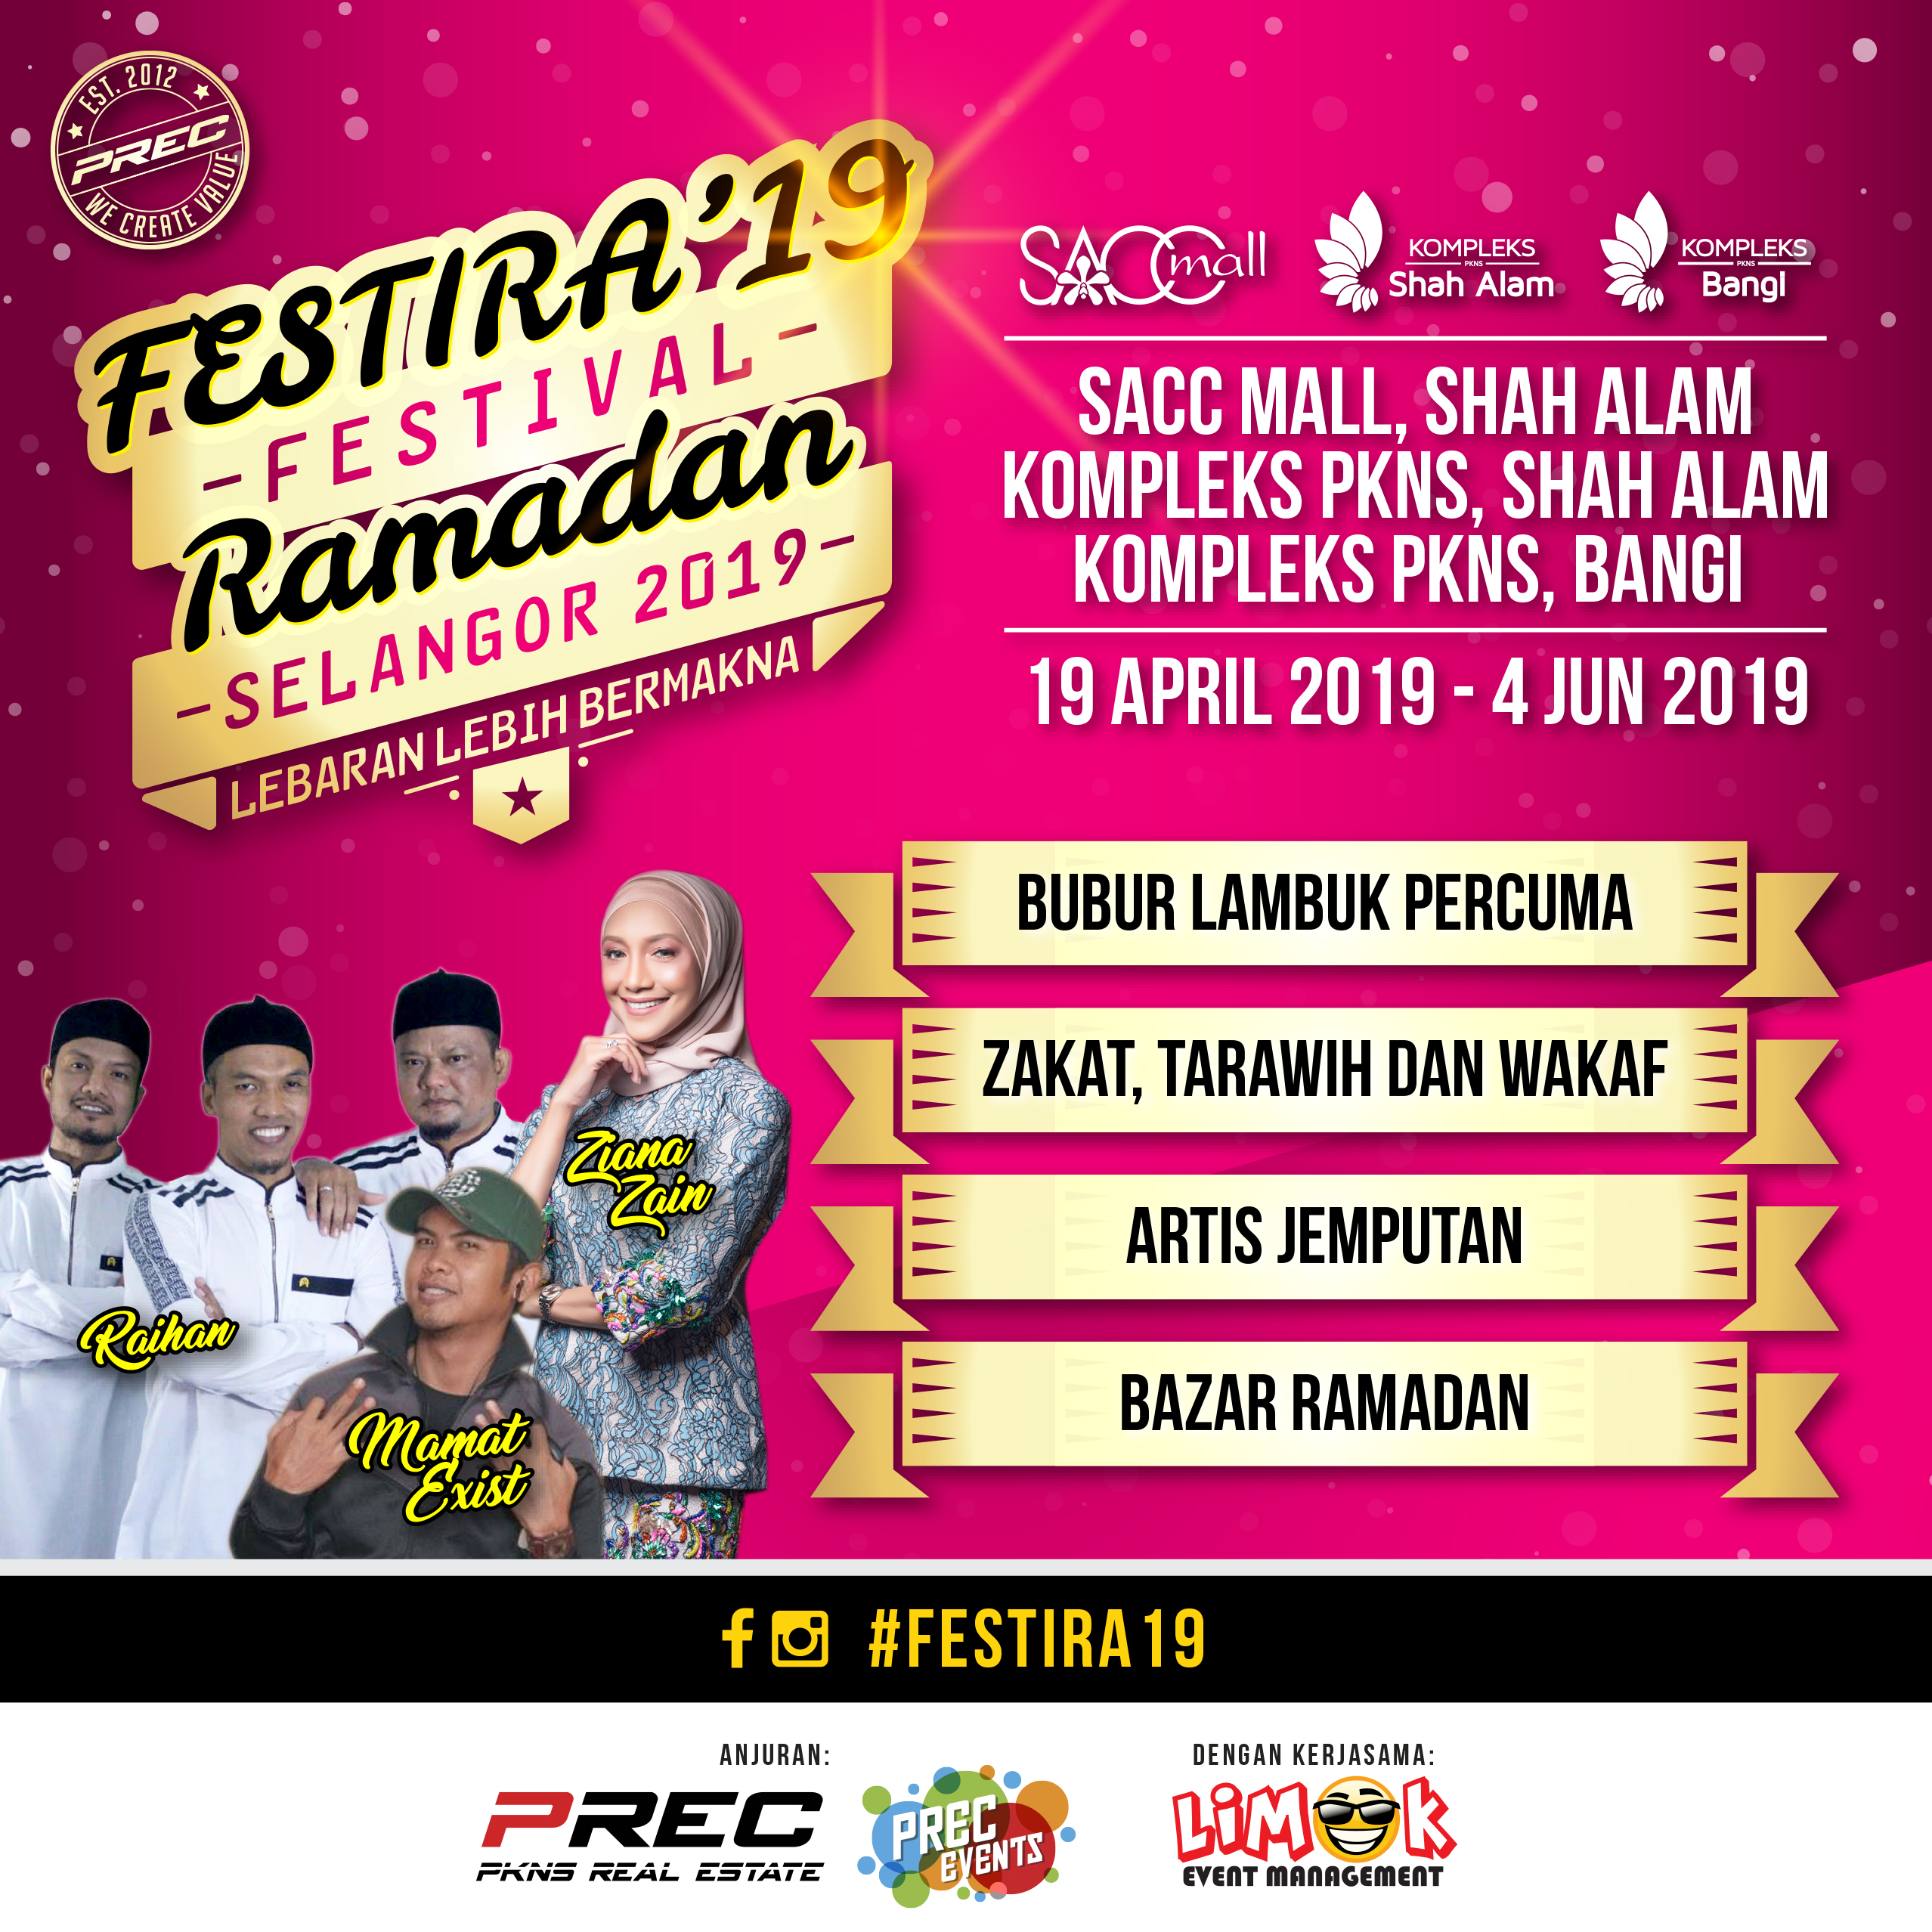 Festival Ramadan Selangor 2019 (FESTIRA’19)